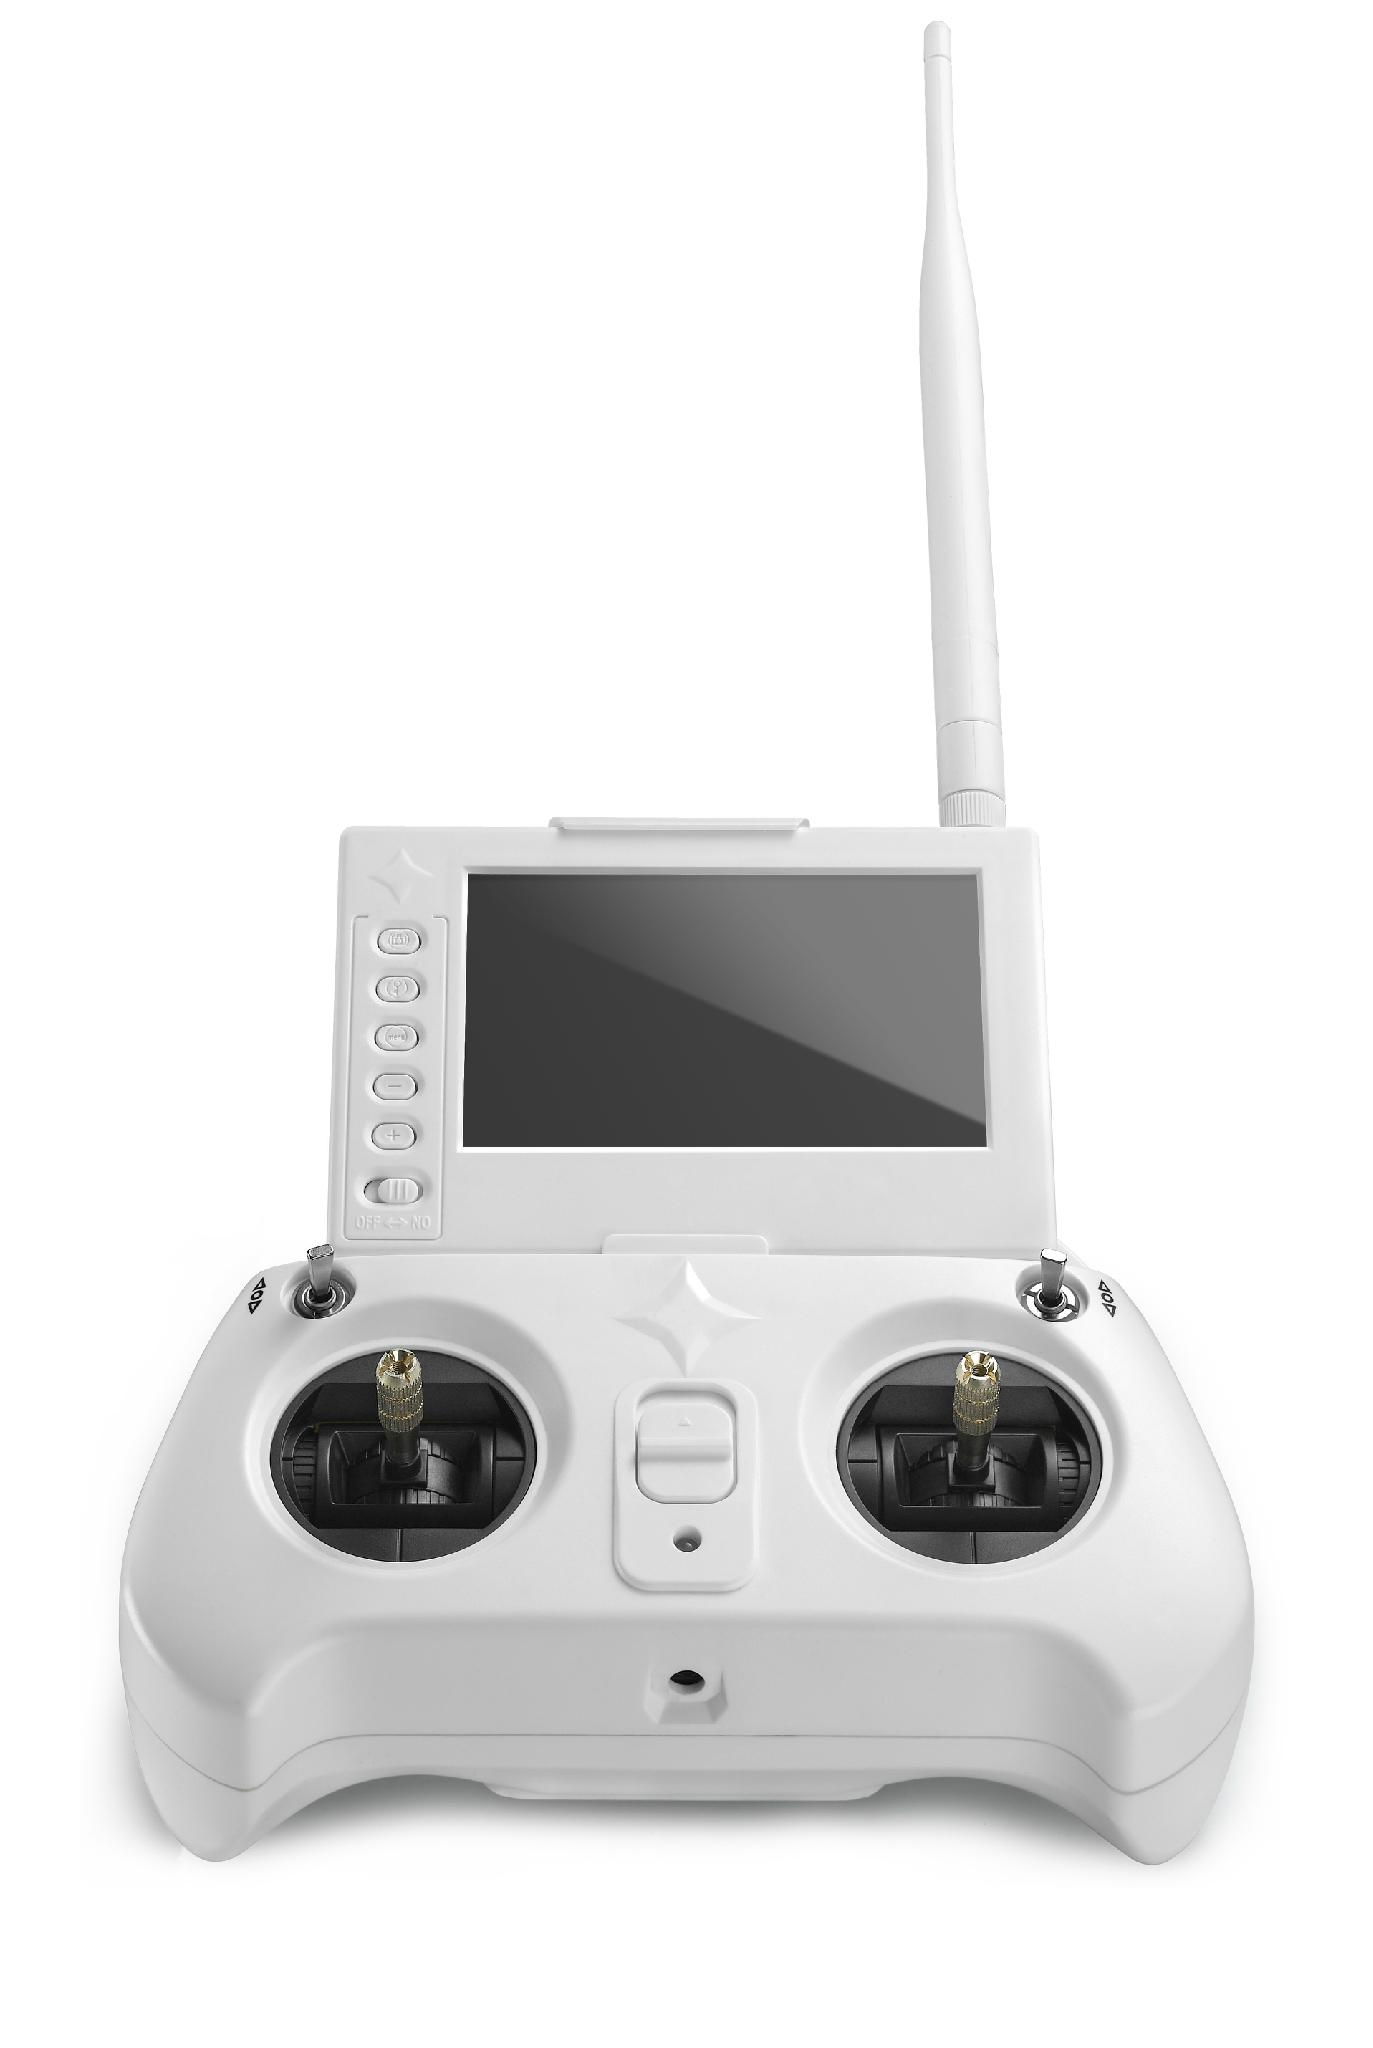 2016 Newest GPS Quadcopter Rc Drone with camera Uav 4-Axis Rc Quadcopter 3